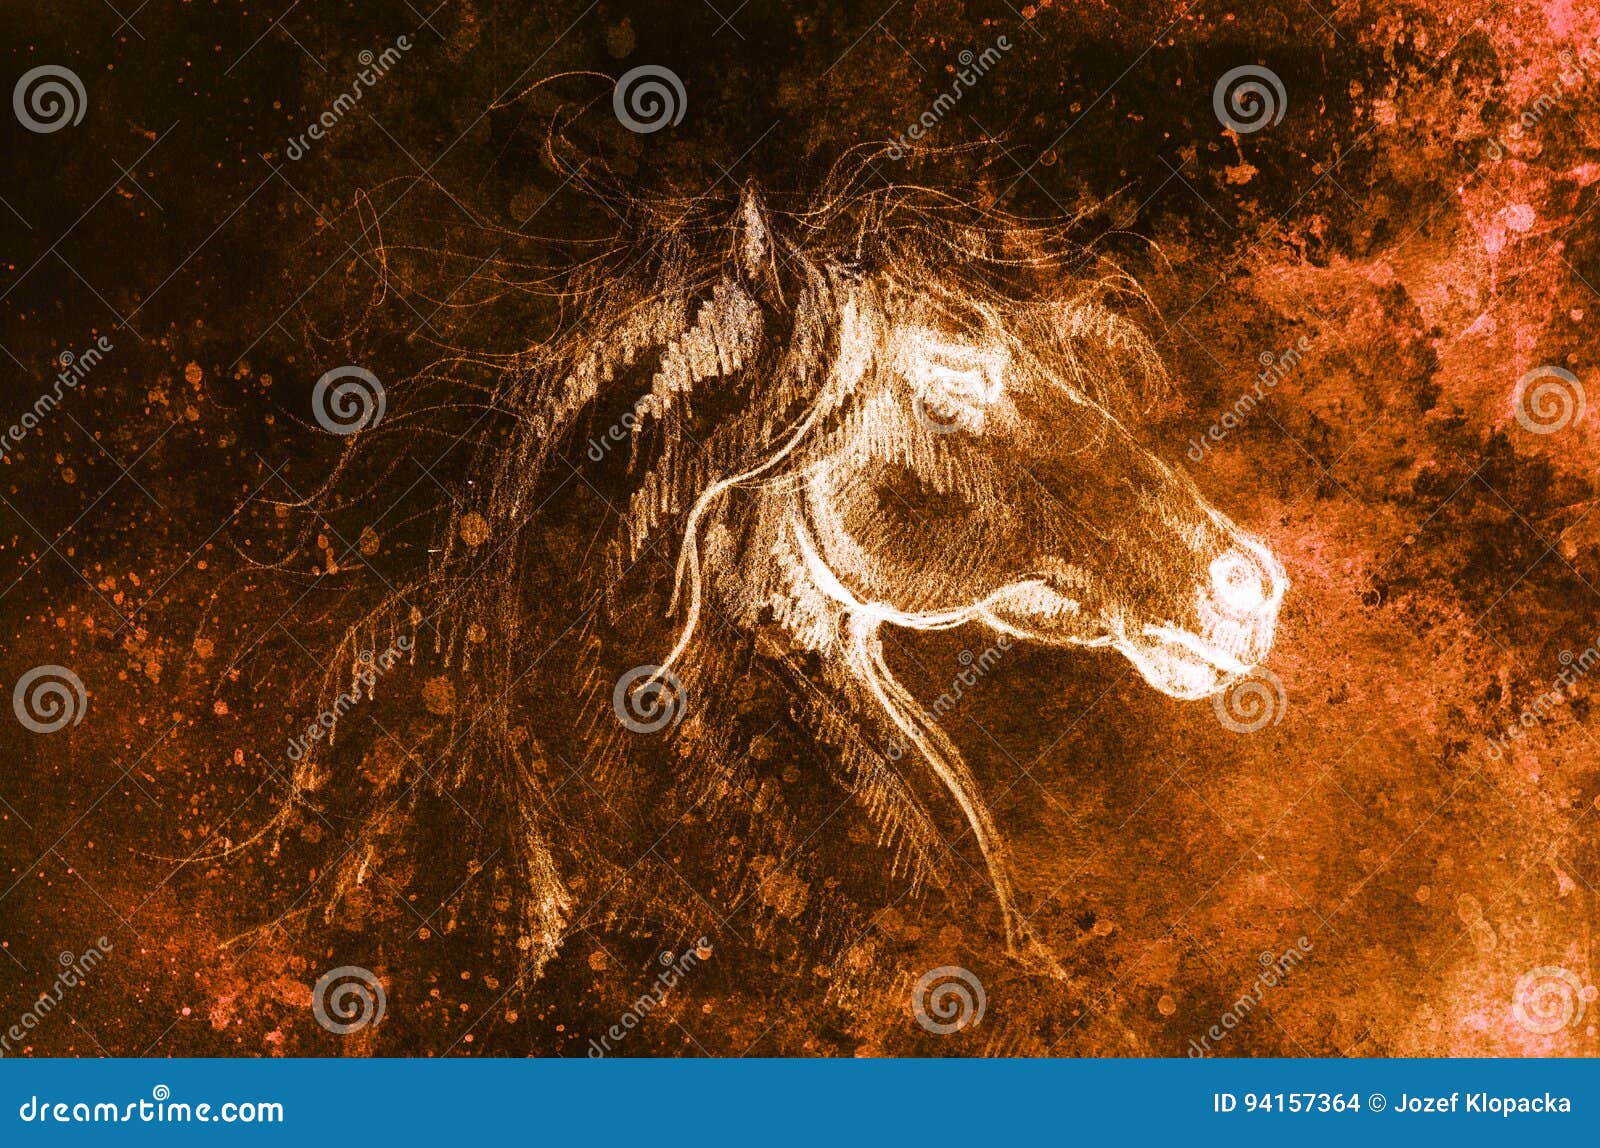 Retrato do cavalo árabe. cabeça de cavalo no perfil na cor monocromática  isolada no fundo branco. ilustração em vetor desenho a mão